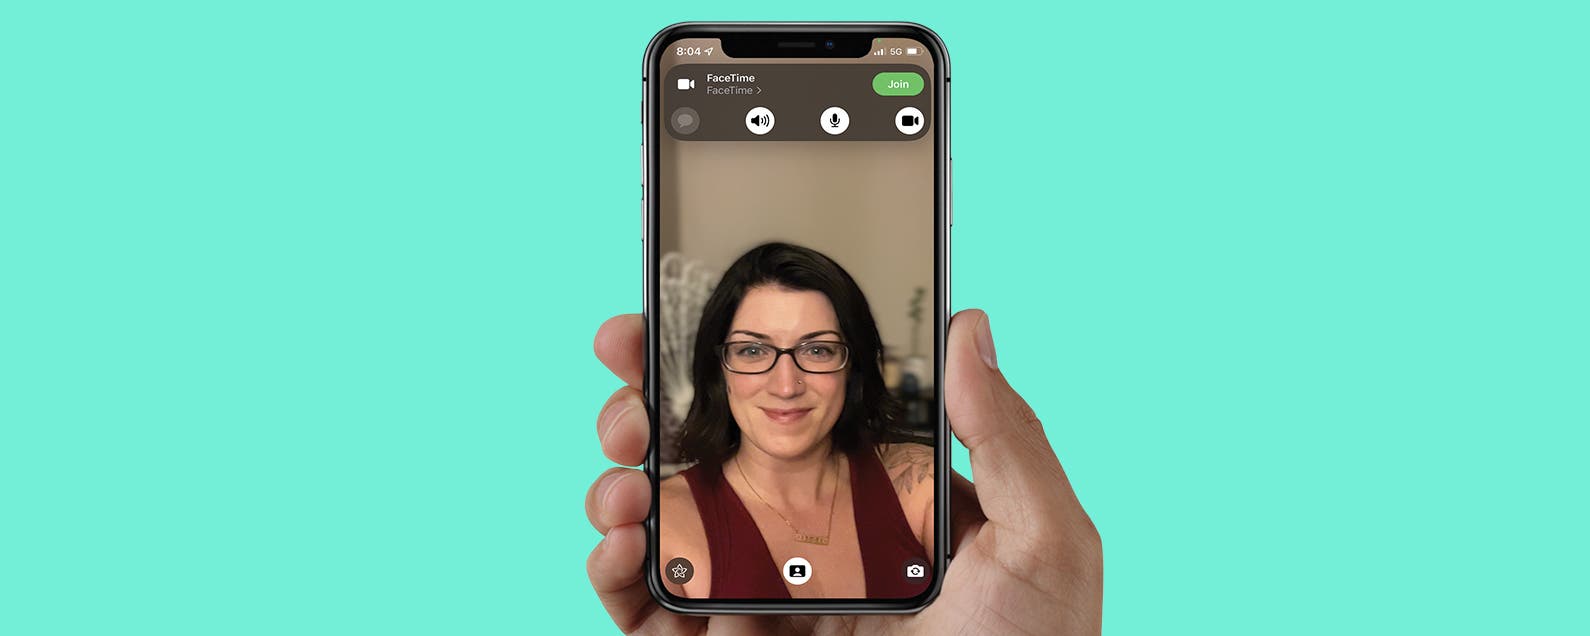 Lời giới thiệu: Chế độ chụp ảnh chân dung với chiếc điện thoại iPhone của bạn sẽ trở nên đơn giản hơn bao giờ hết, và chất lượng ảnh sẽ càng được cải thiện hơn bao giờ hết. Hãy tha hồ tạo ra những bức ảnh chân dung đẹp nhất. 